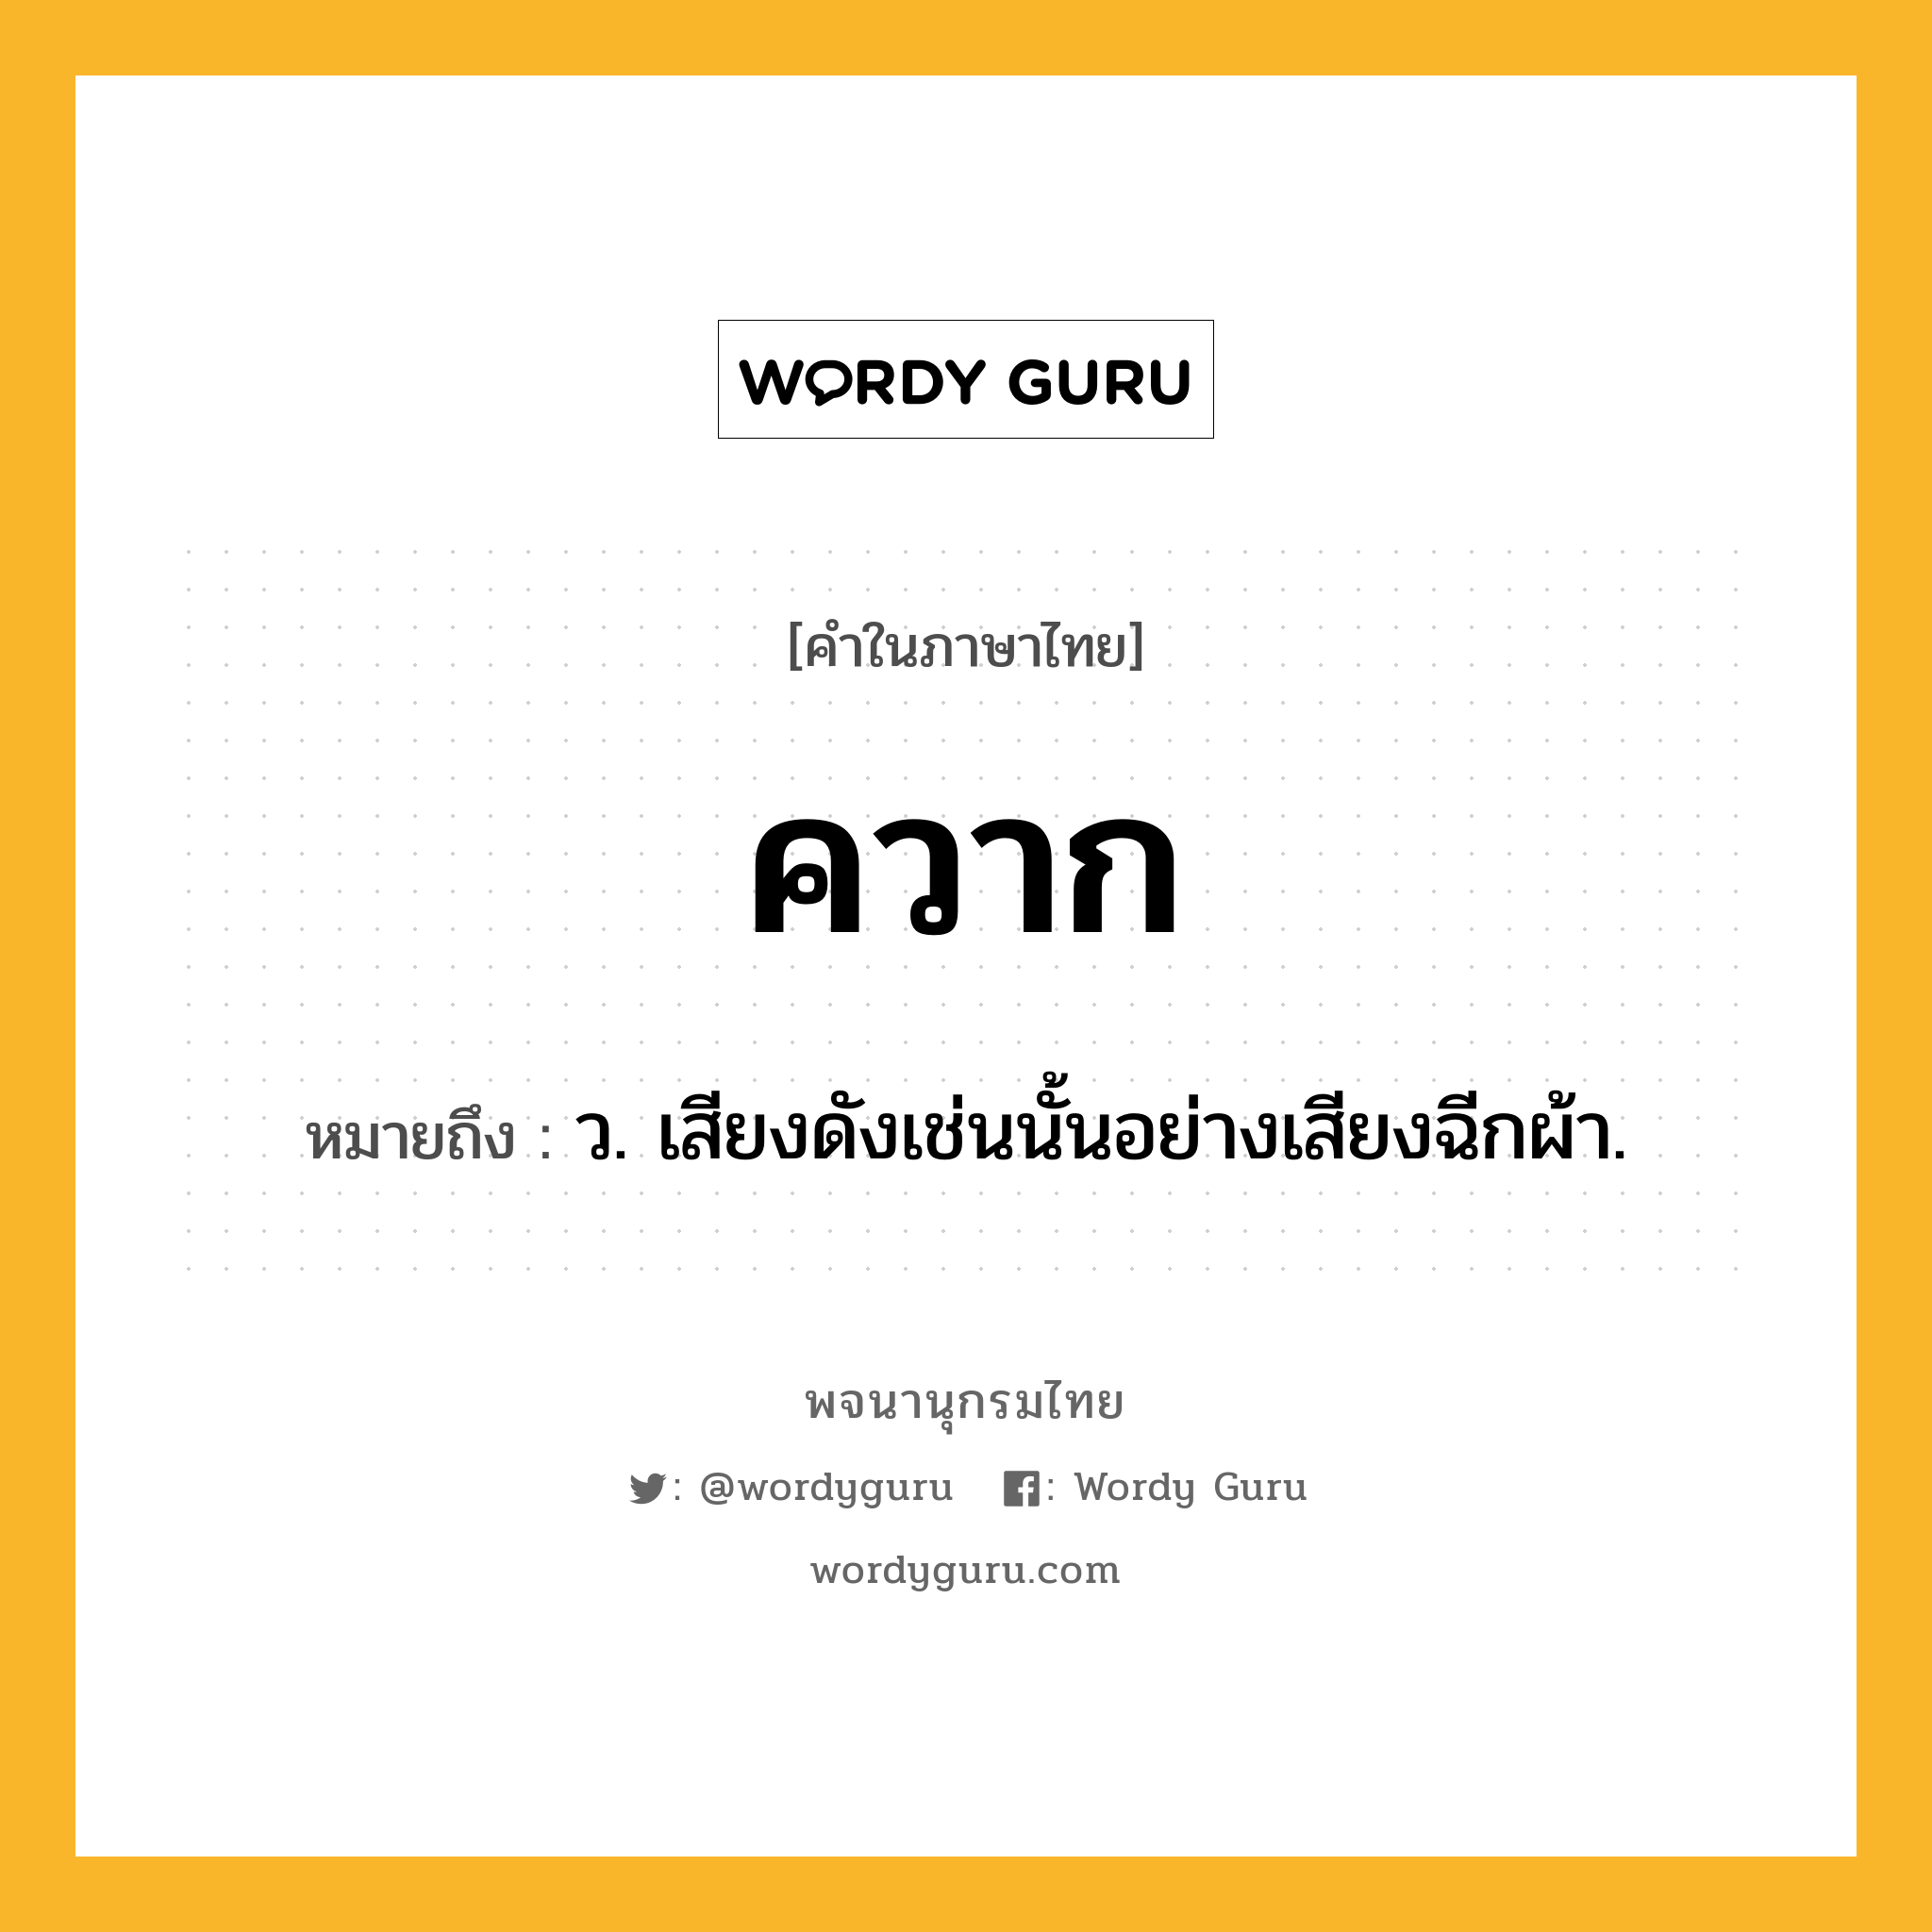 ควาก หมายถึงอะไร?, คำในภาษาไทย ควาก หมายถึง ว. เสียงดังเช่นนั้นอย่างเสียงฉีกผ้า.